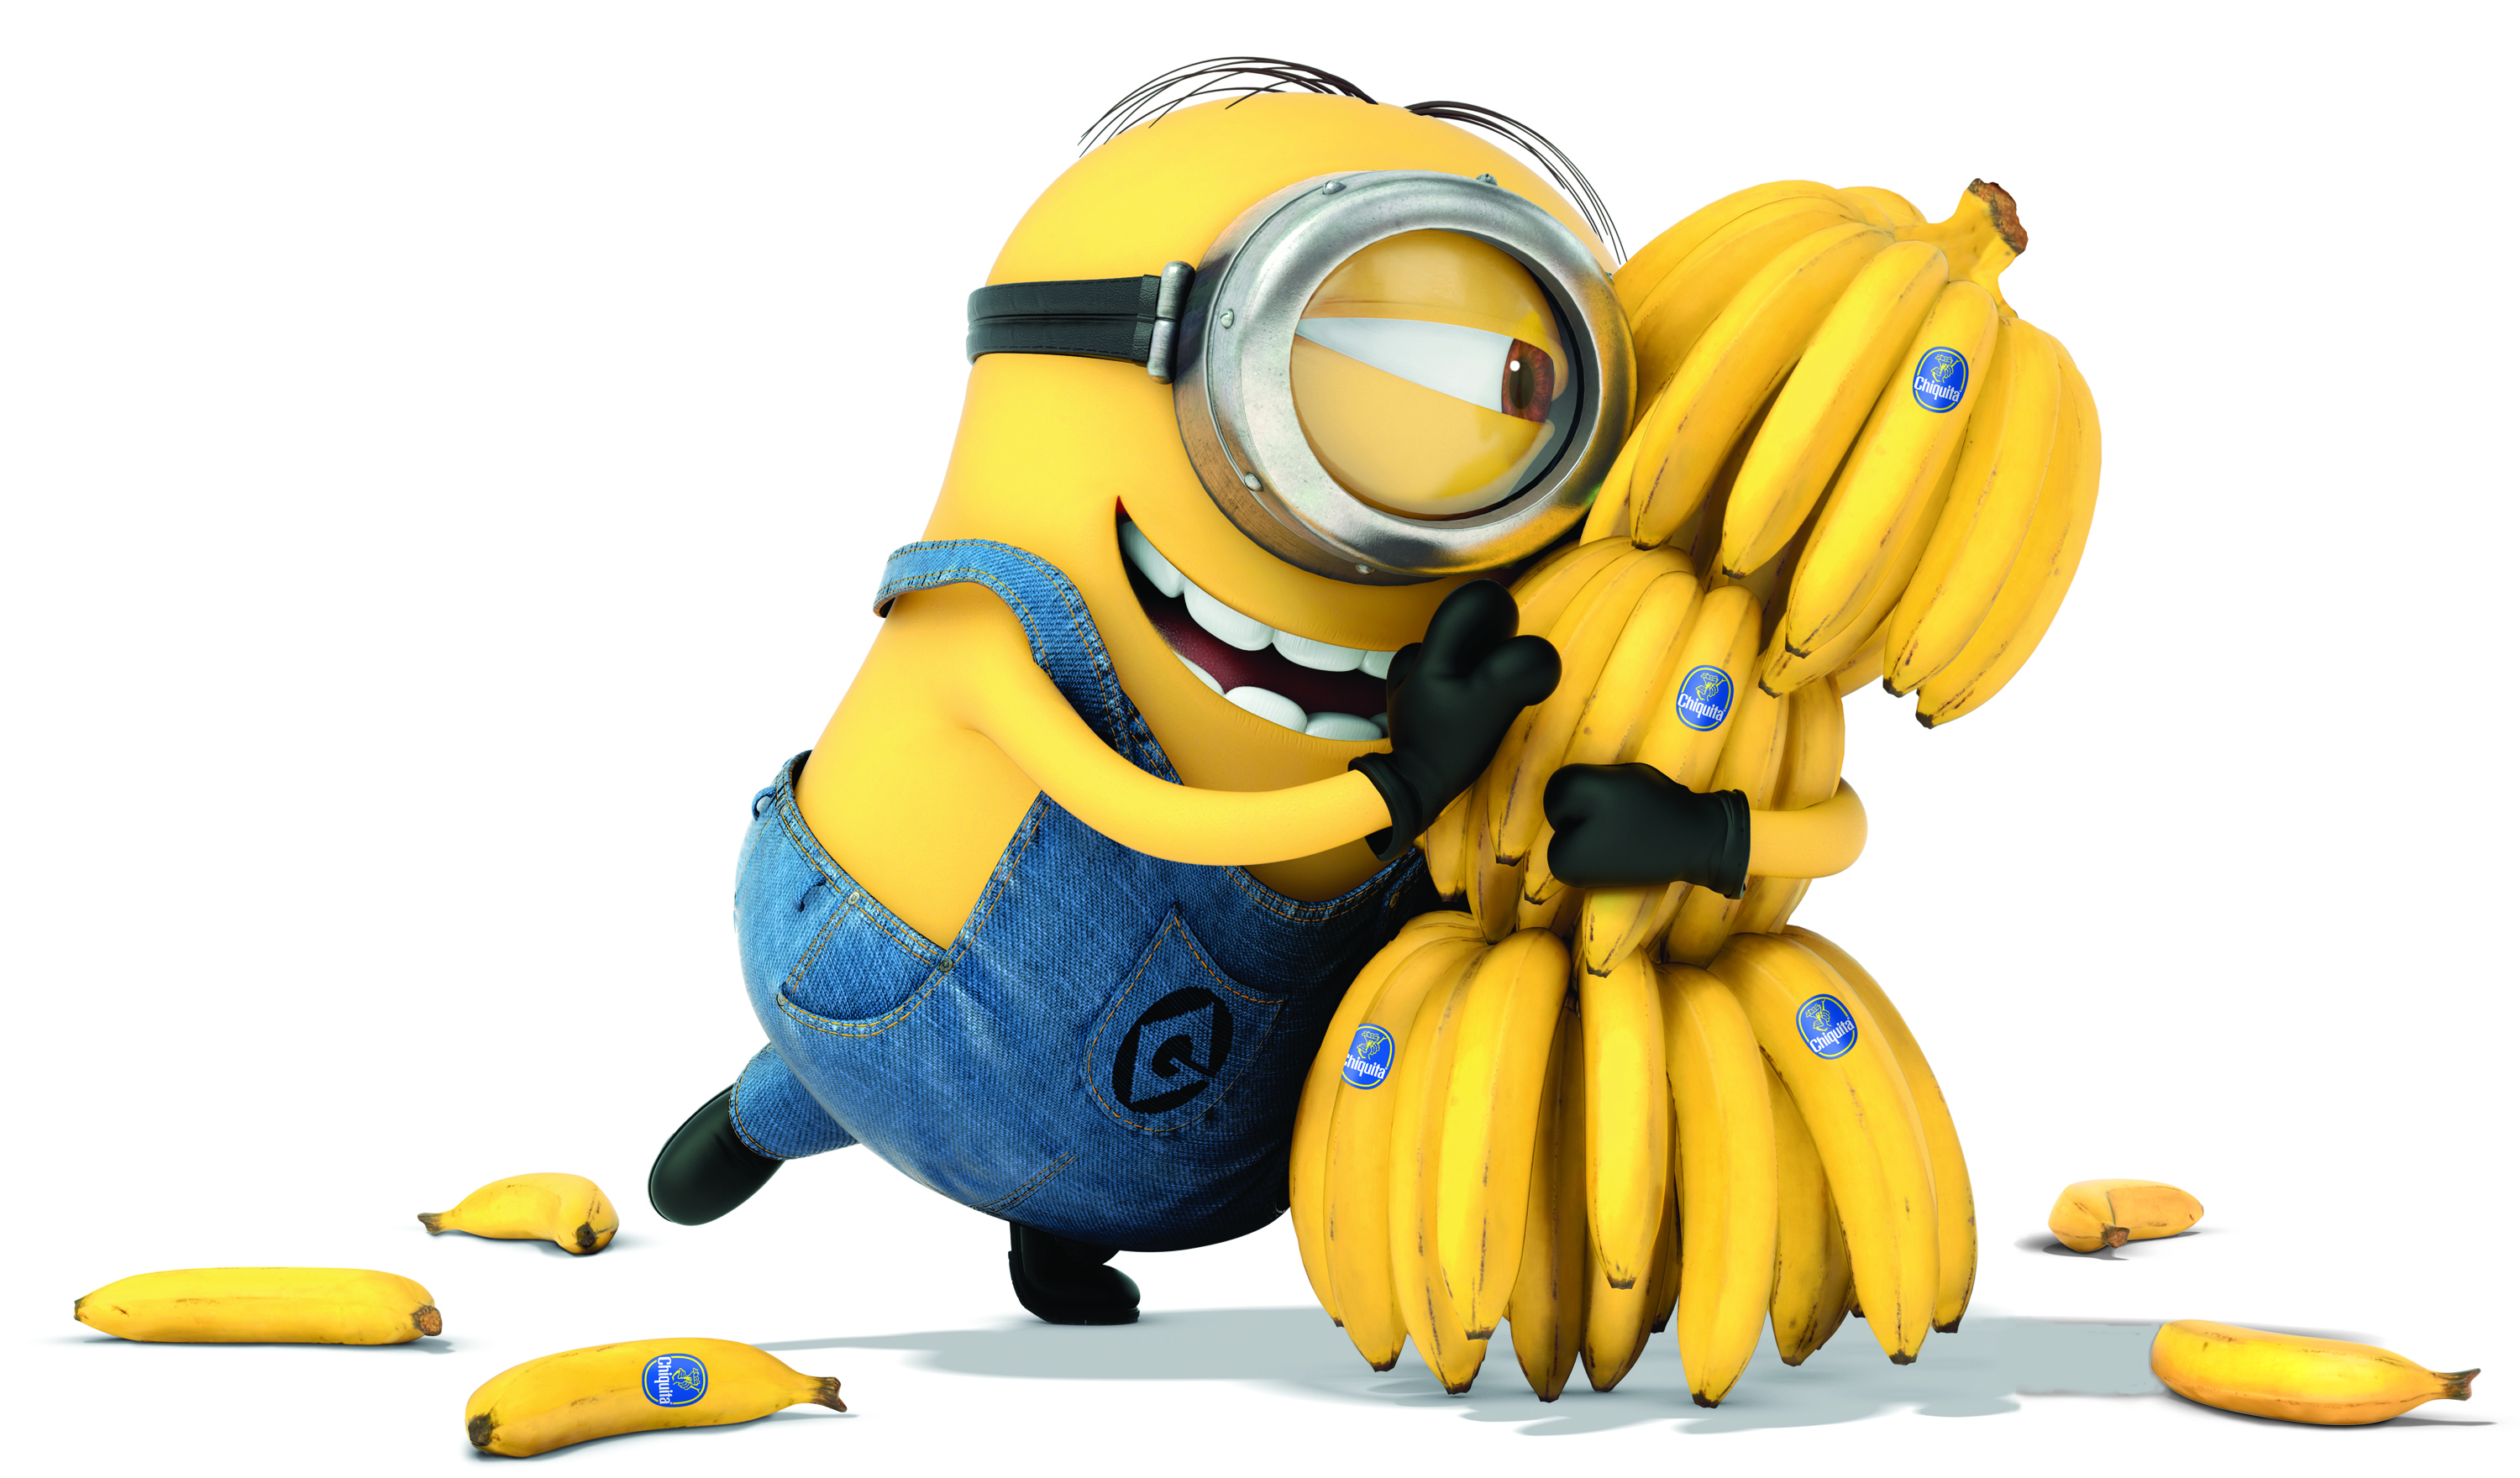 Cartoons_The_cartoon_Minions__they_love_bananas_051627_.jpg